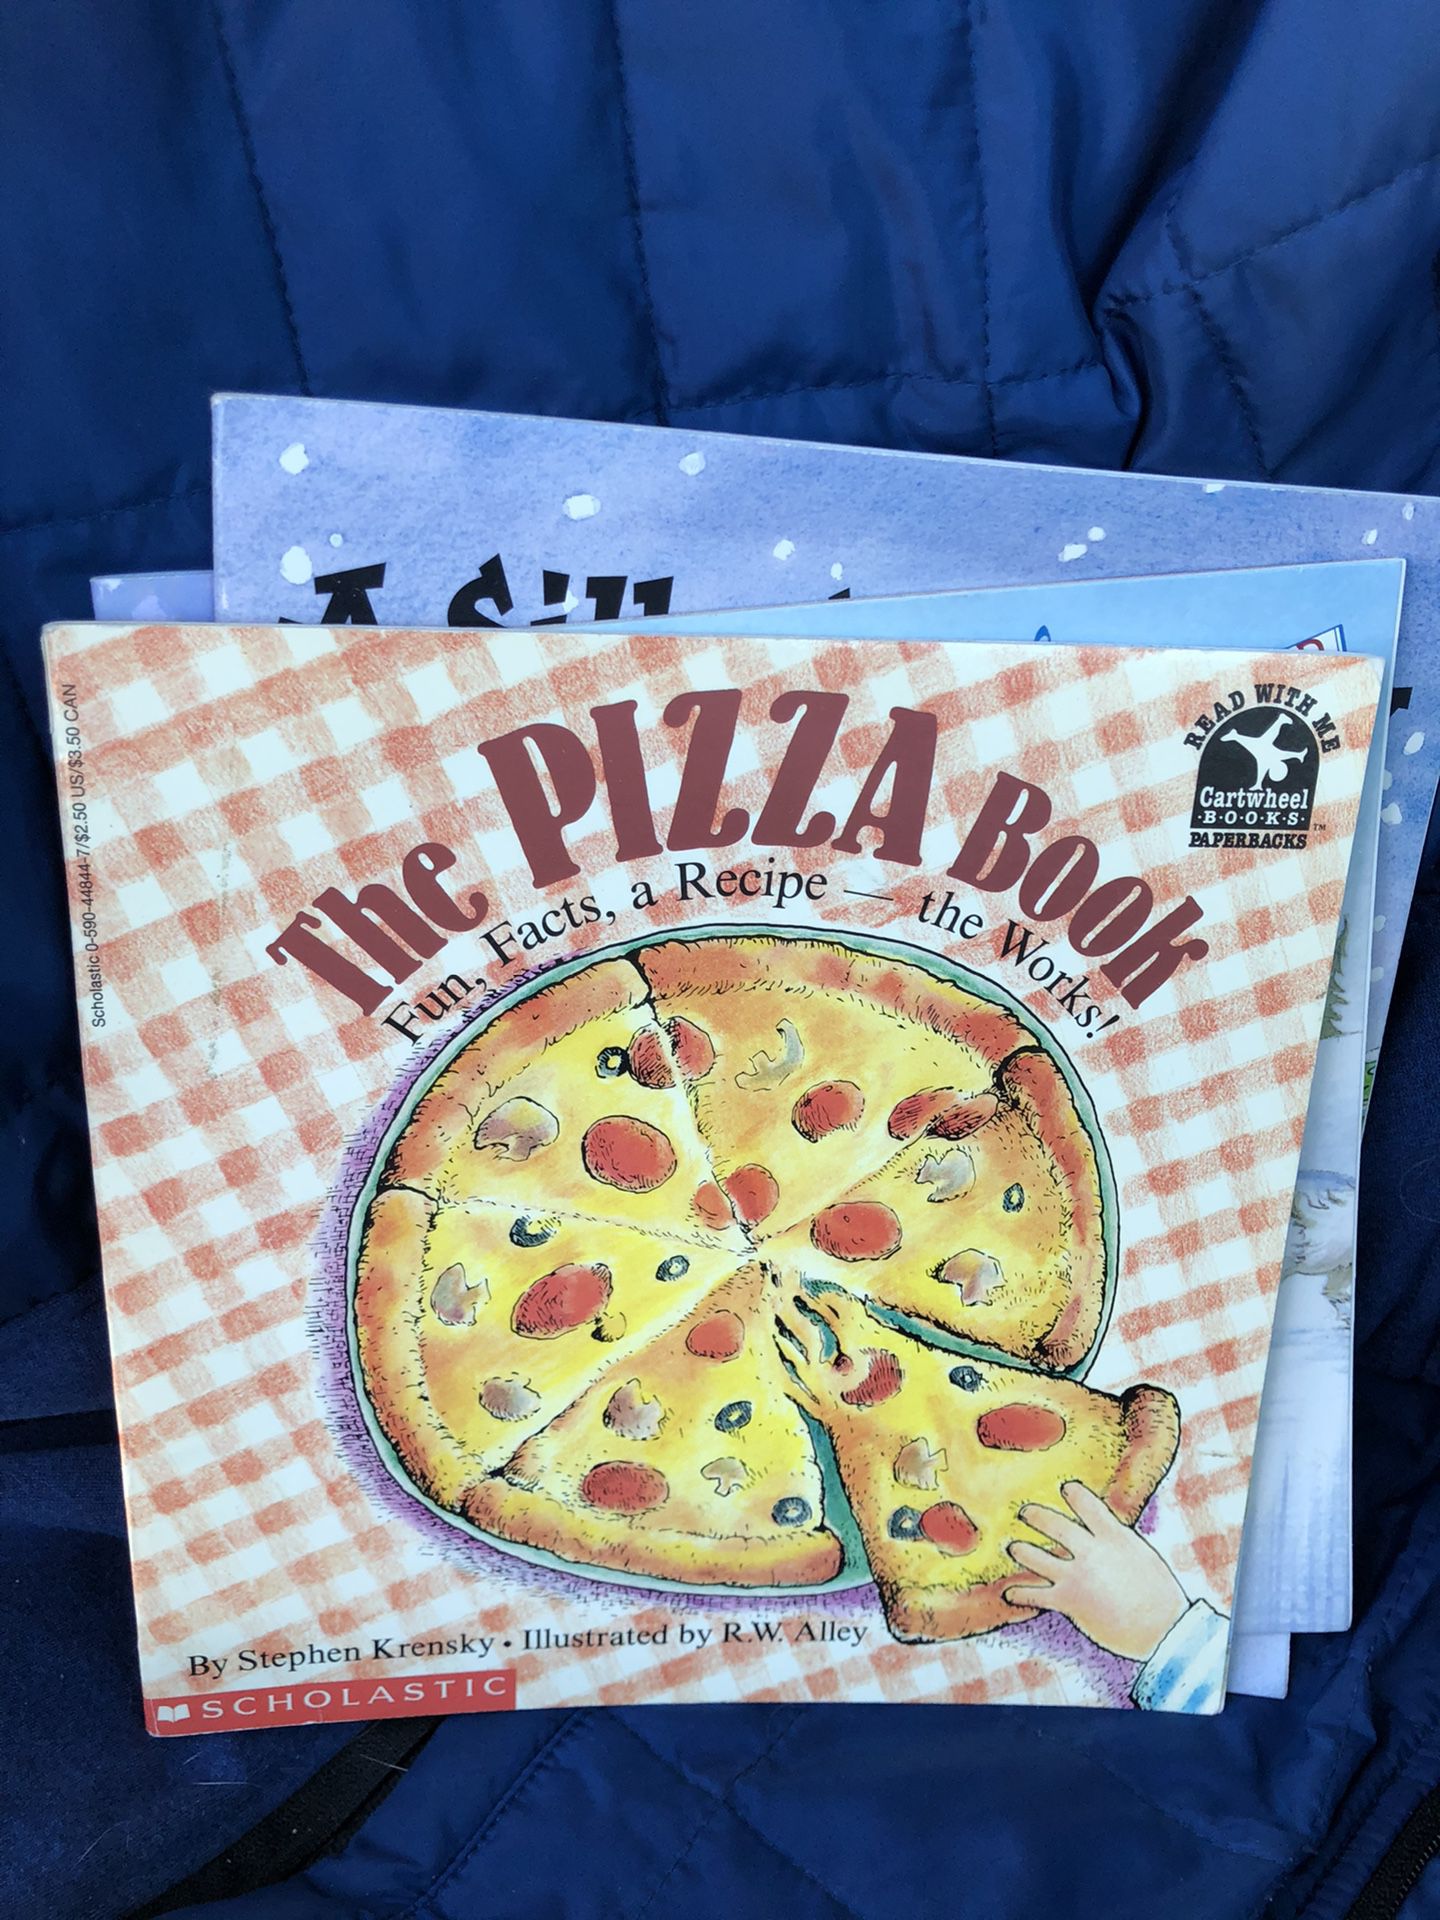 Pizza delivery children’s book